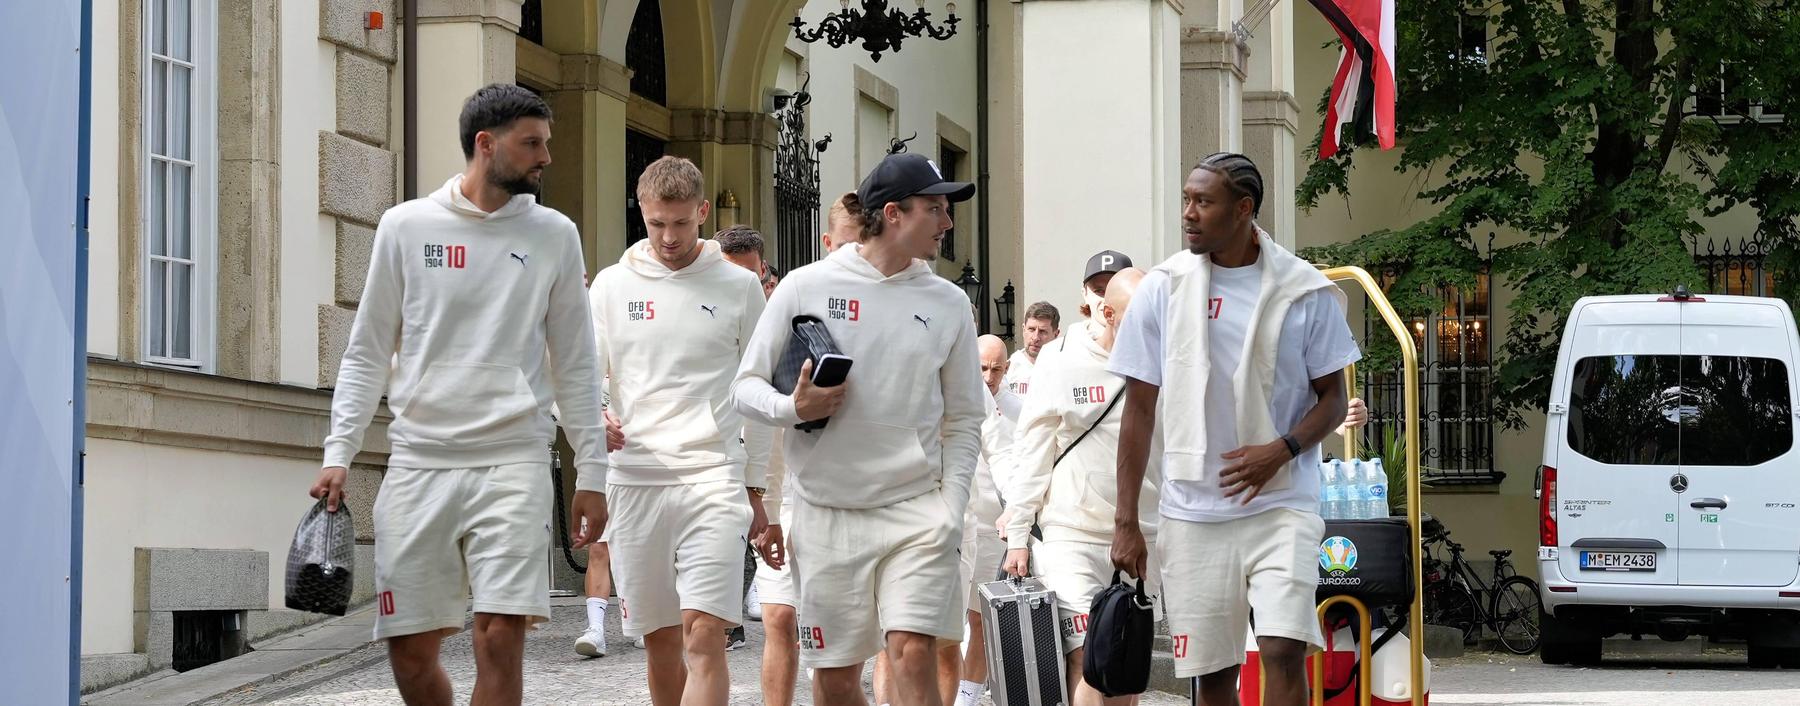 Österreichs Fußballteam fühlt sich im EM-Quartier des Schlosshotels Grunewald geborgen.